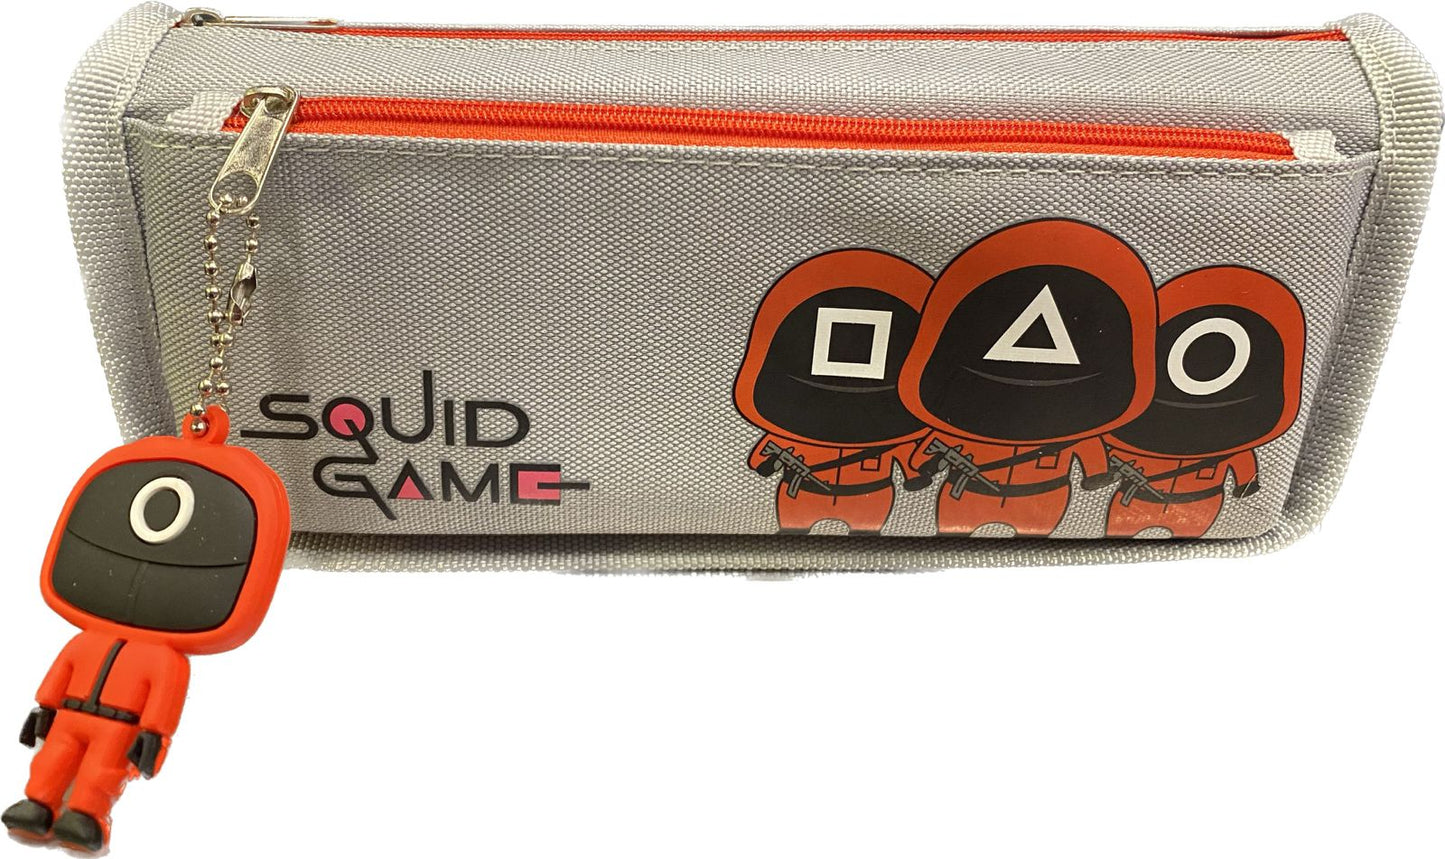 Squid Game Pencil Case